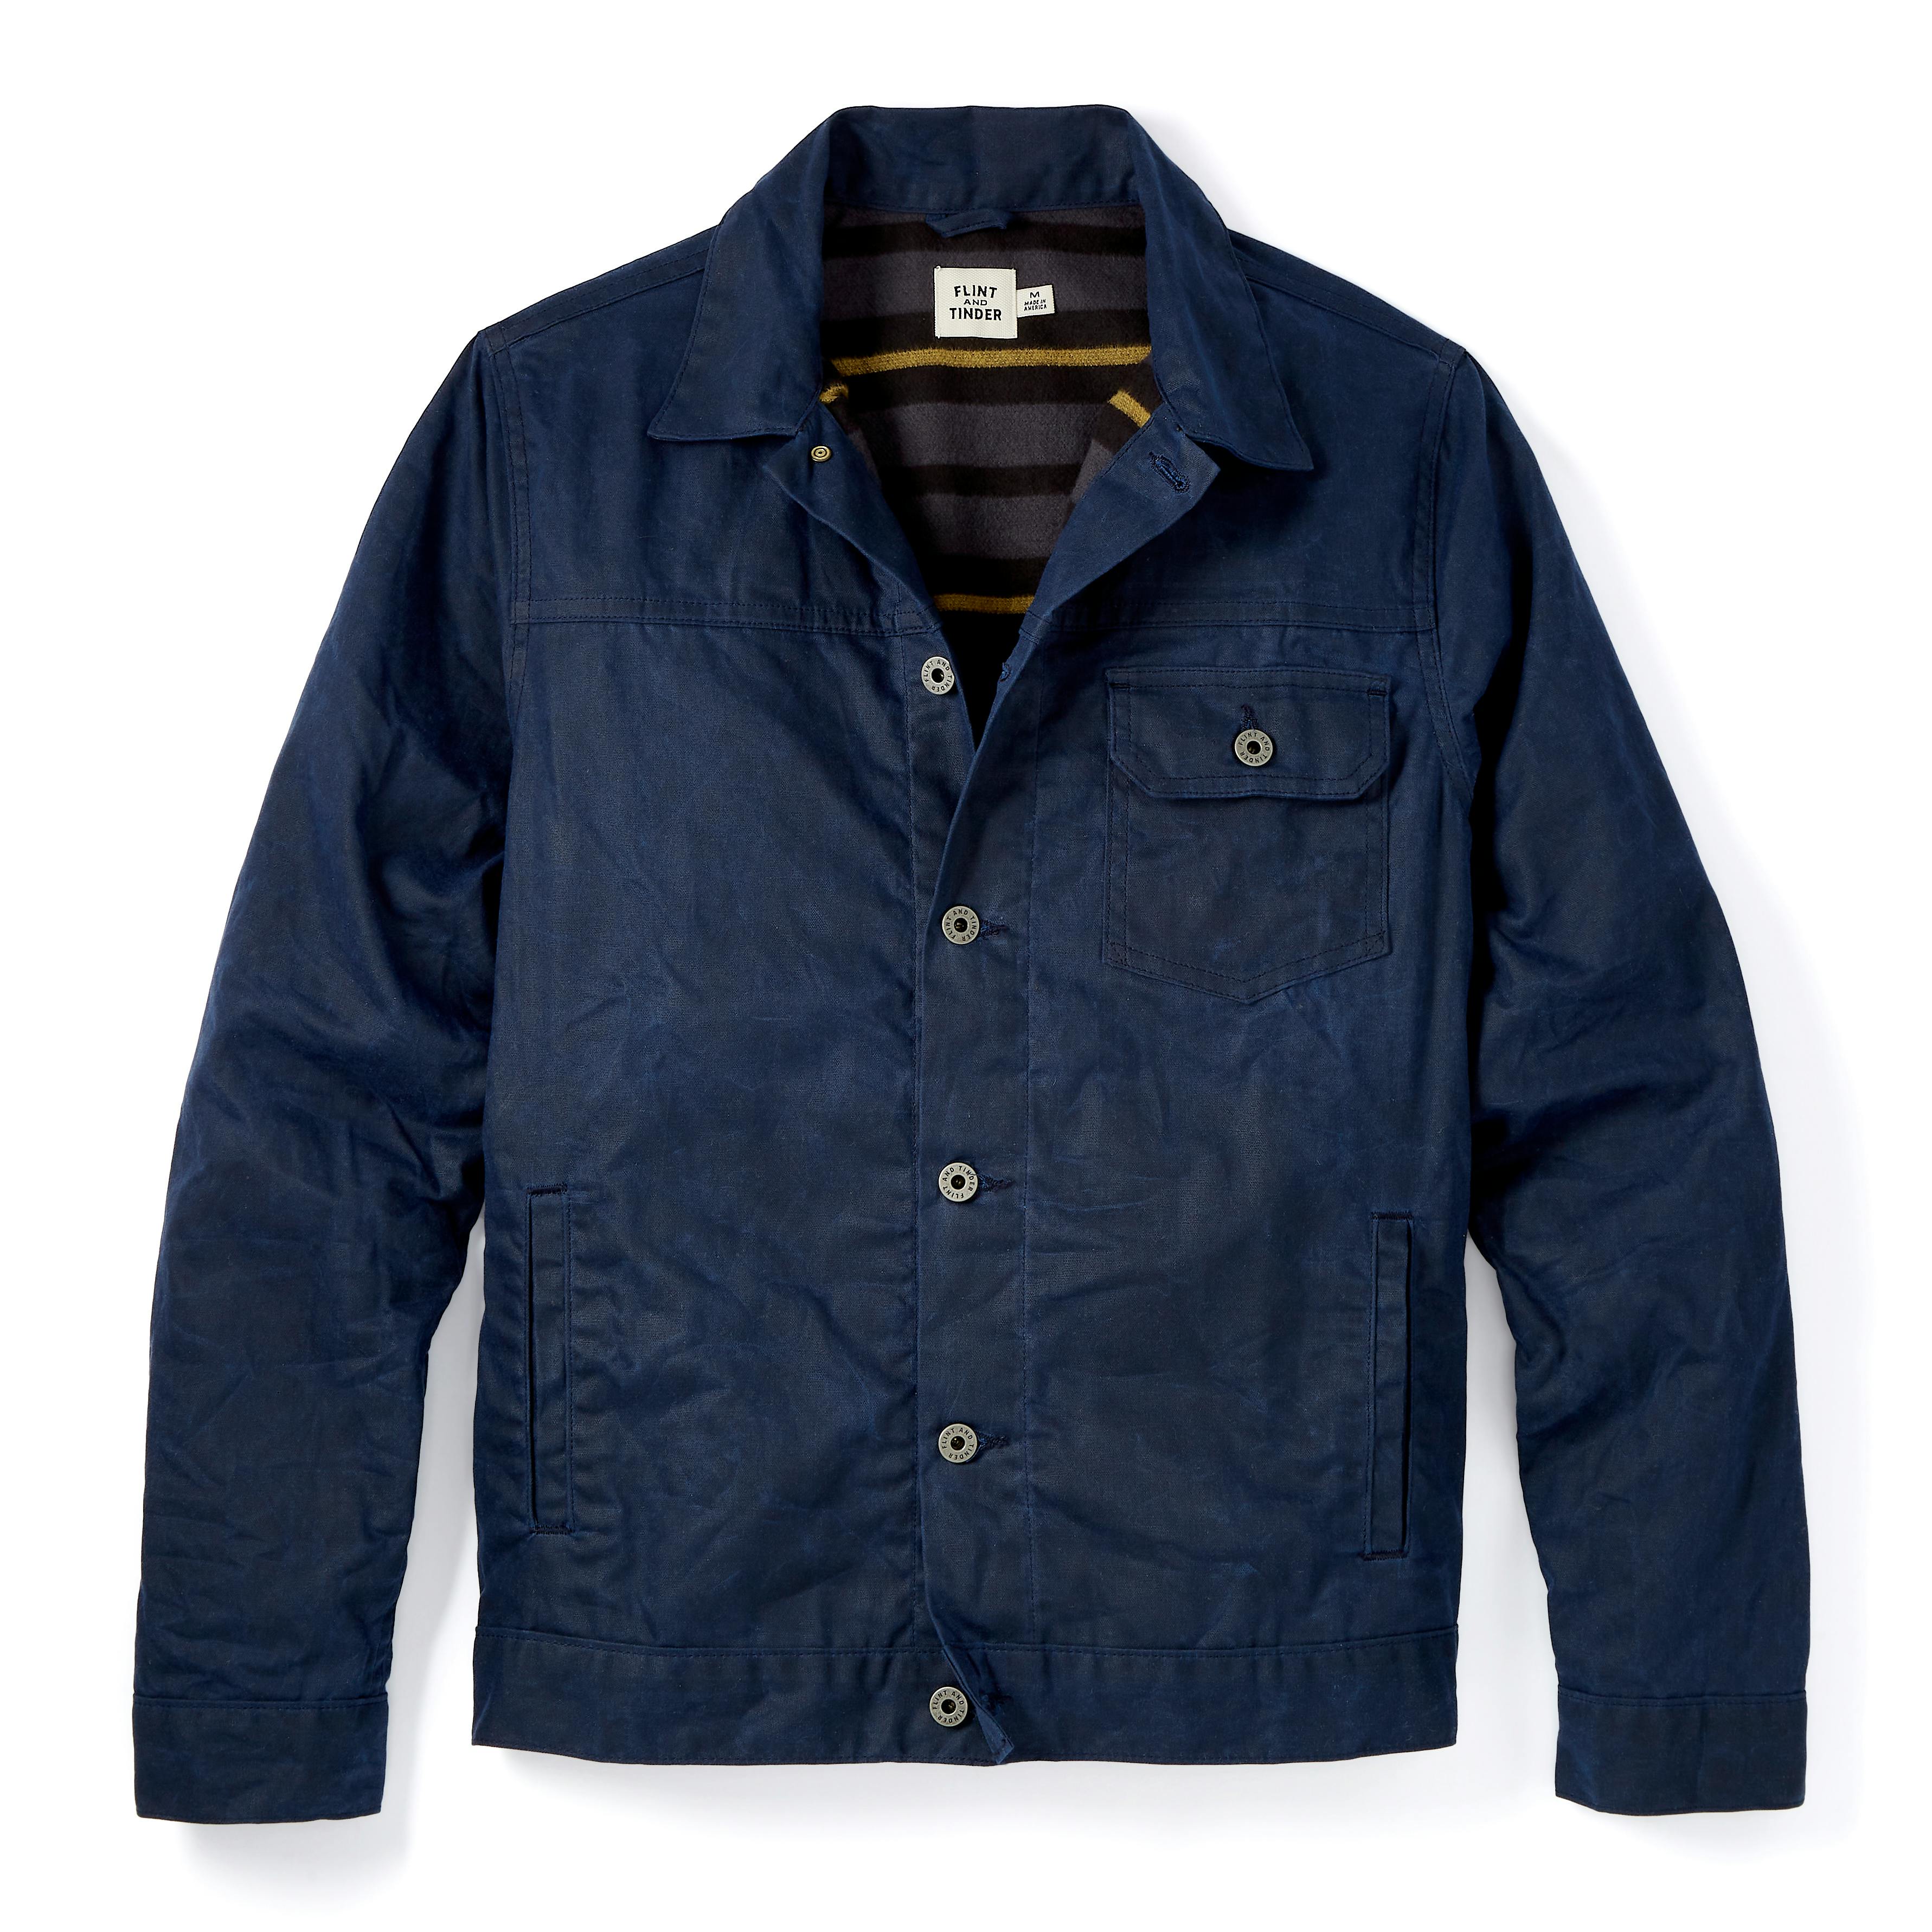 Flannel-lined Waxed Trucker Jacket